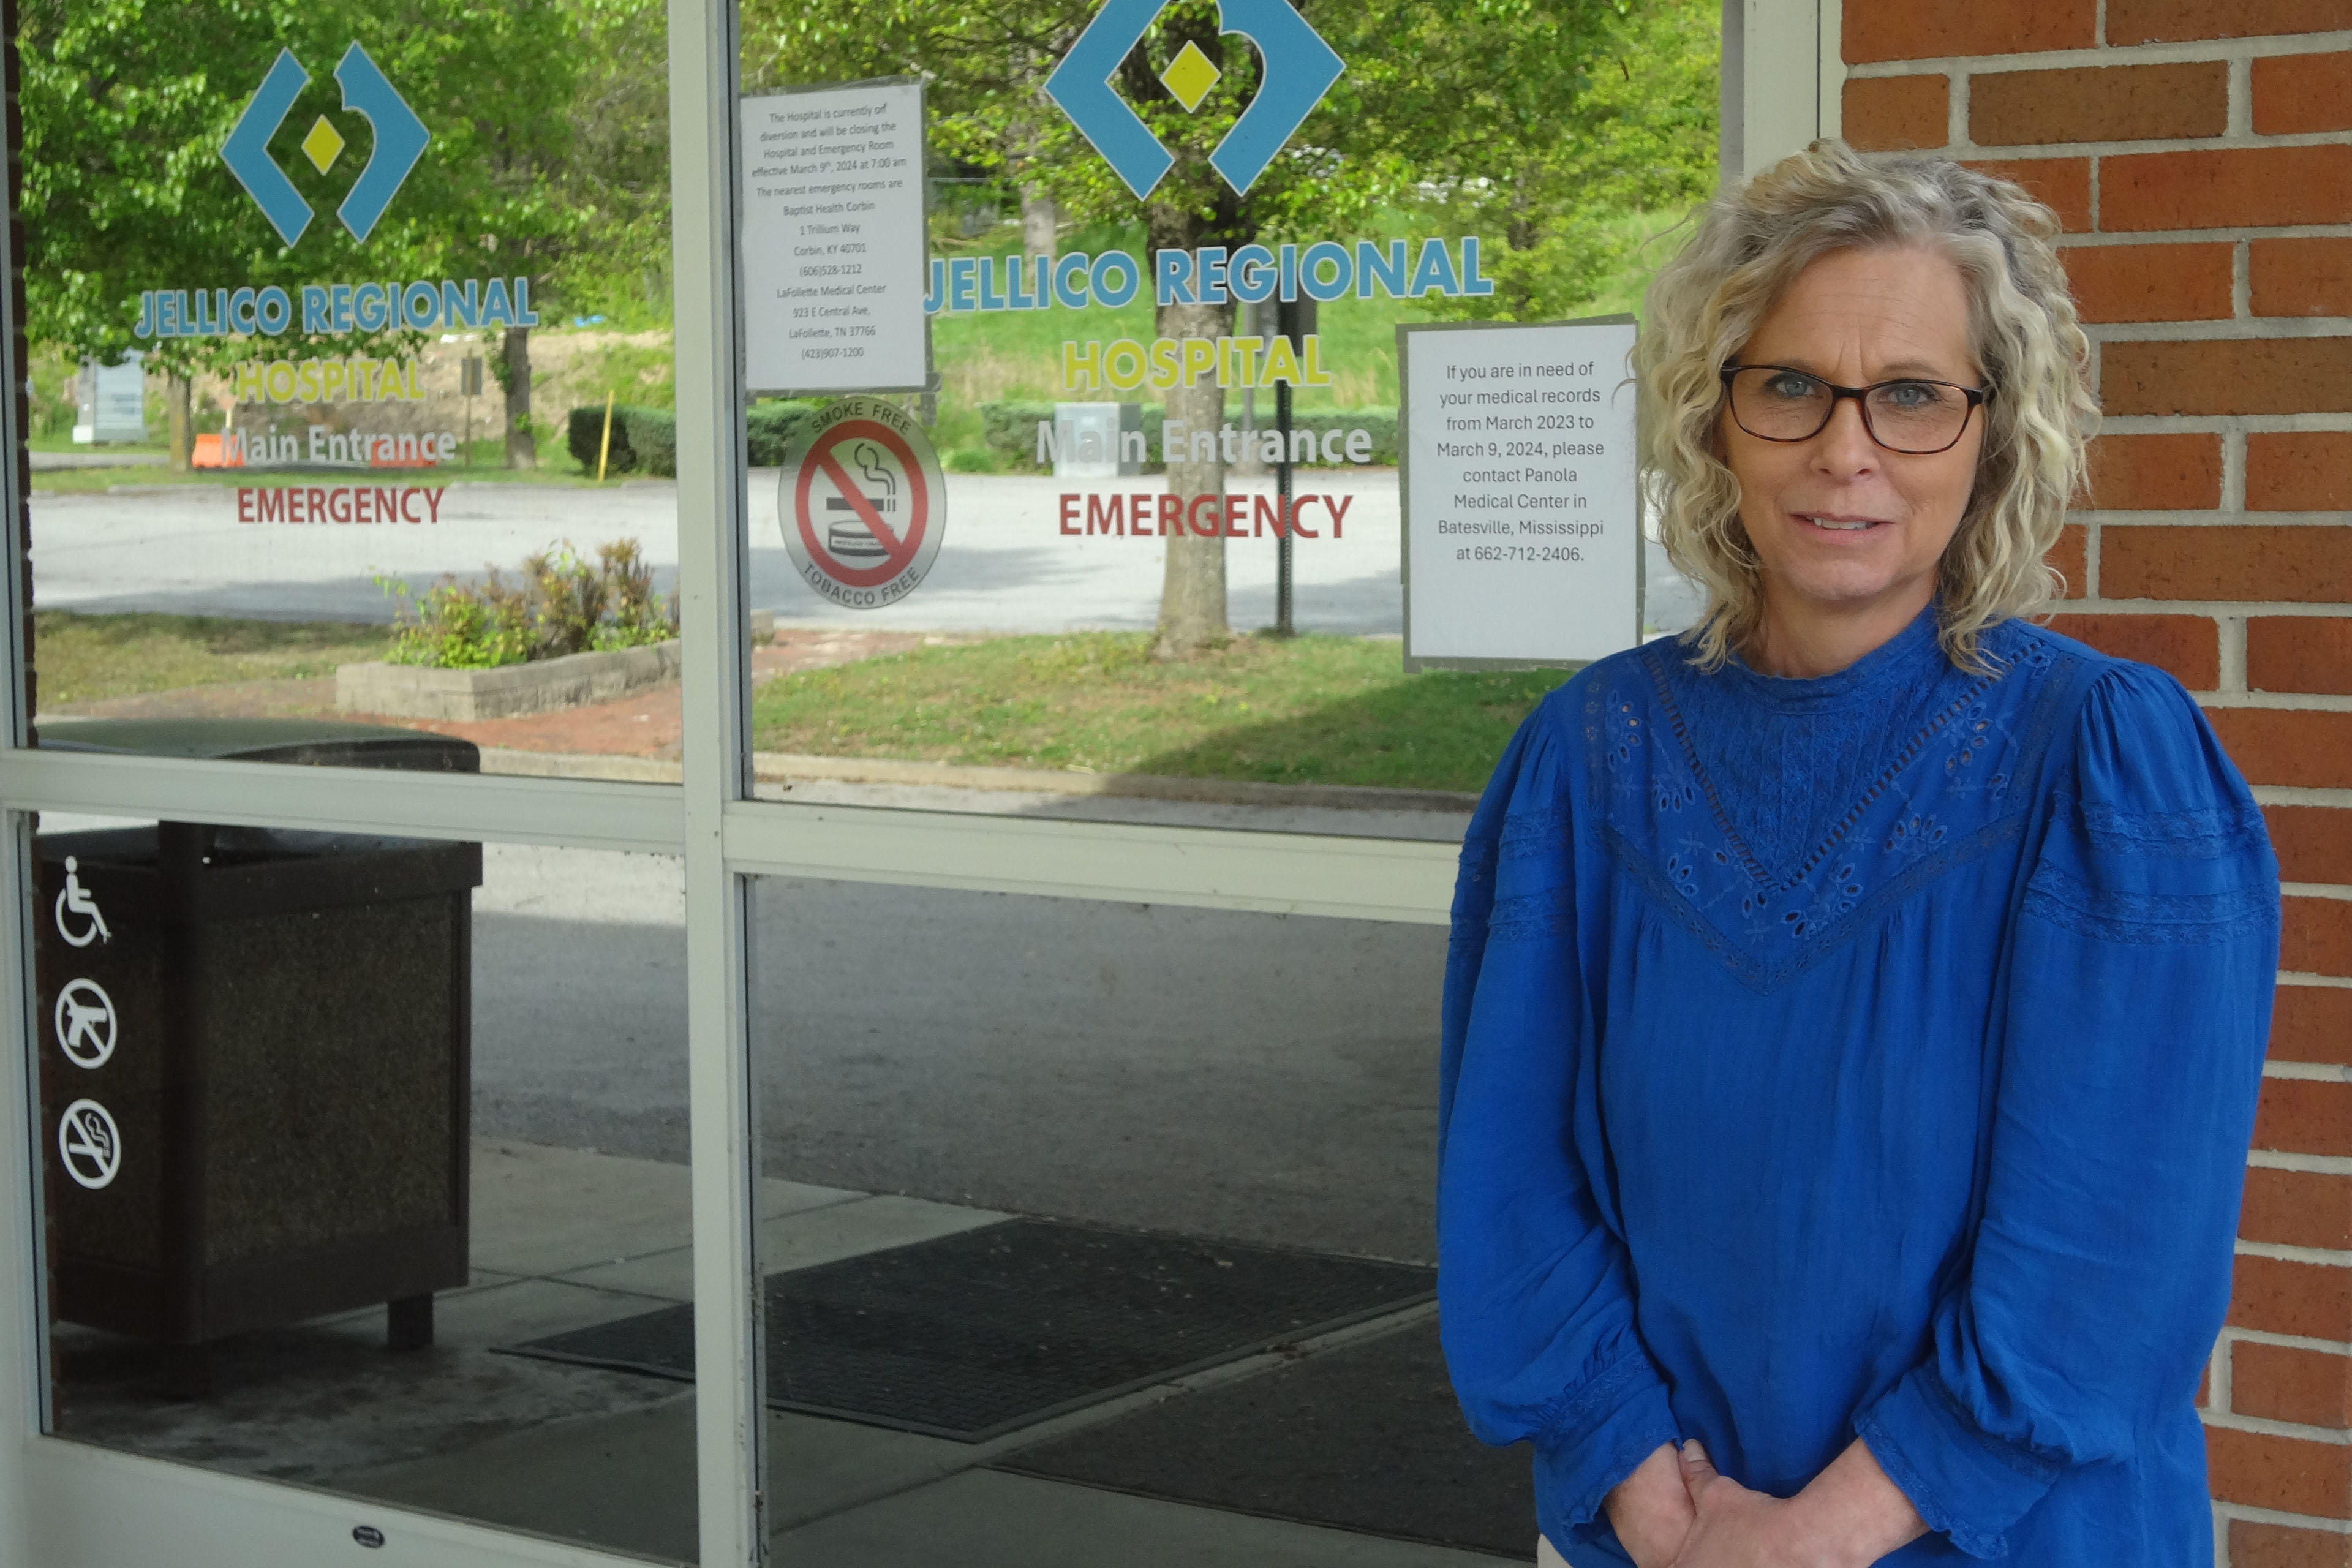 تقف ساندي تيري، التي ترتدي بلوزة زرقاء زاهية، بجانب الأبواب الزجاجية التي تمثل مدخل مركز جيليكو الطبي السابق.